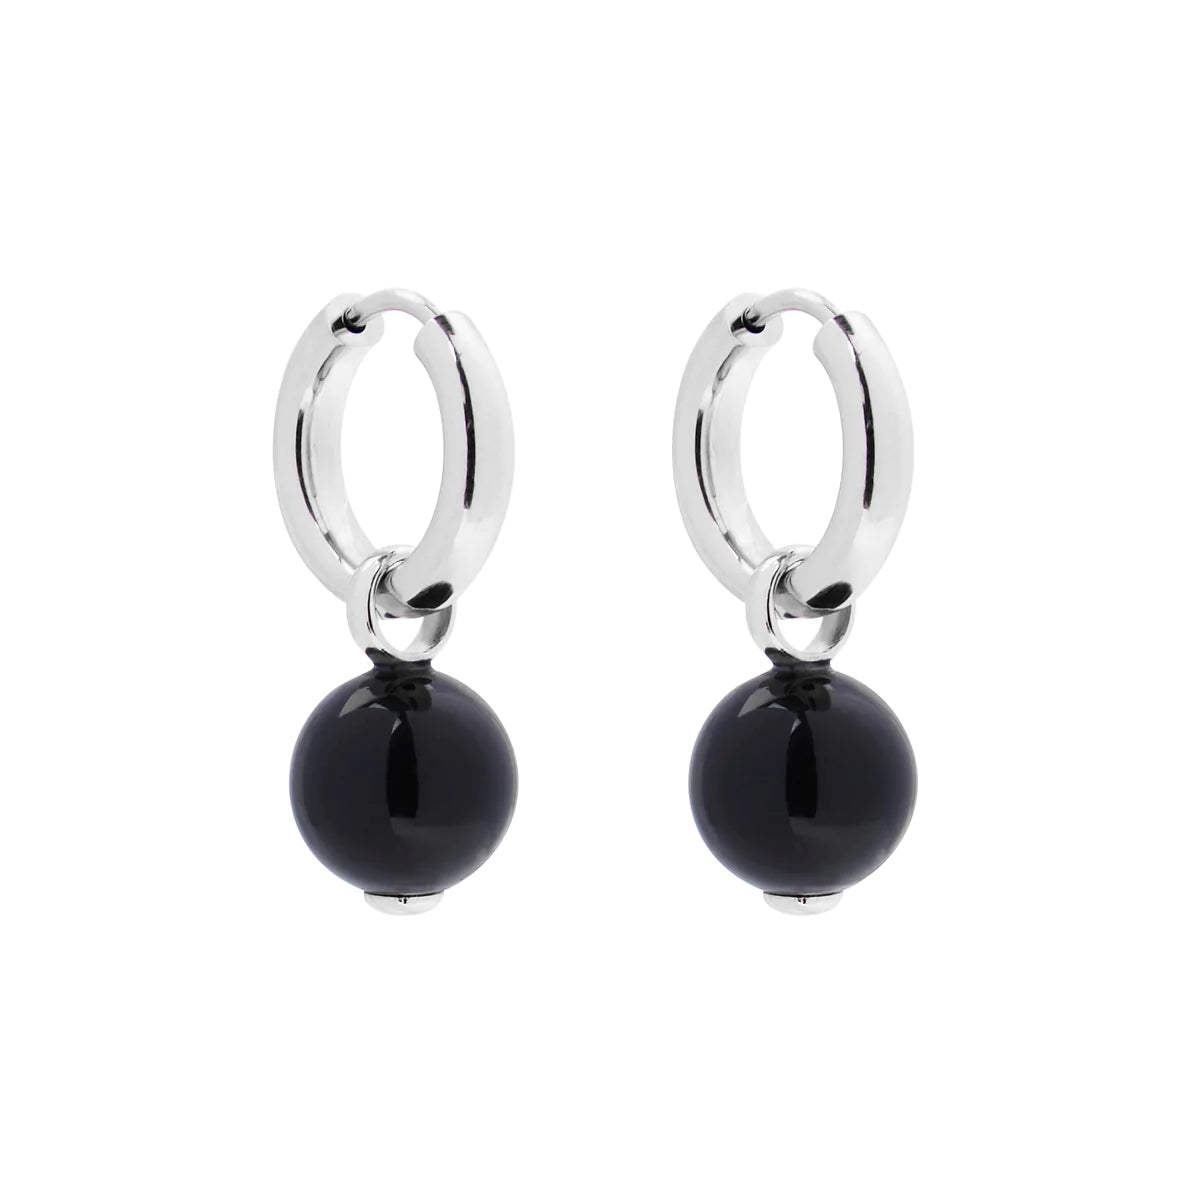 Jellydrop Silver Black Onyx Earrings